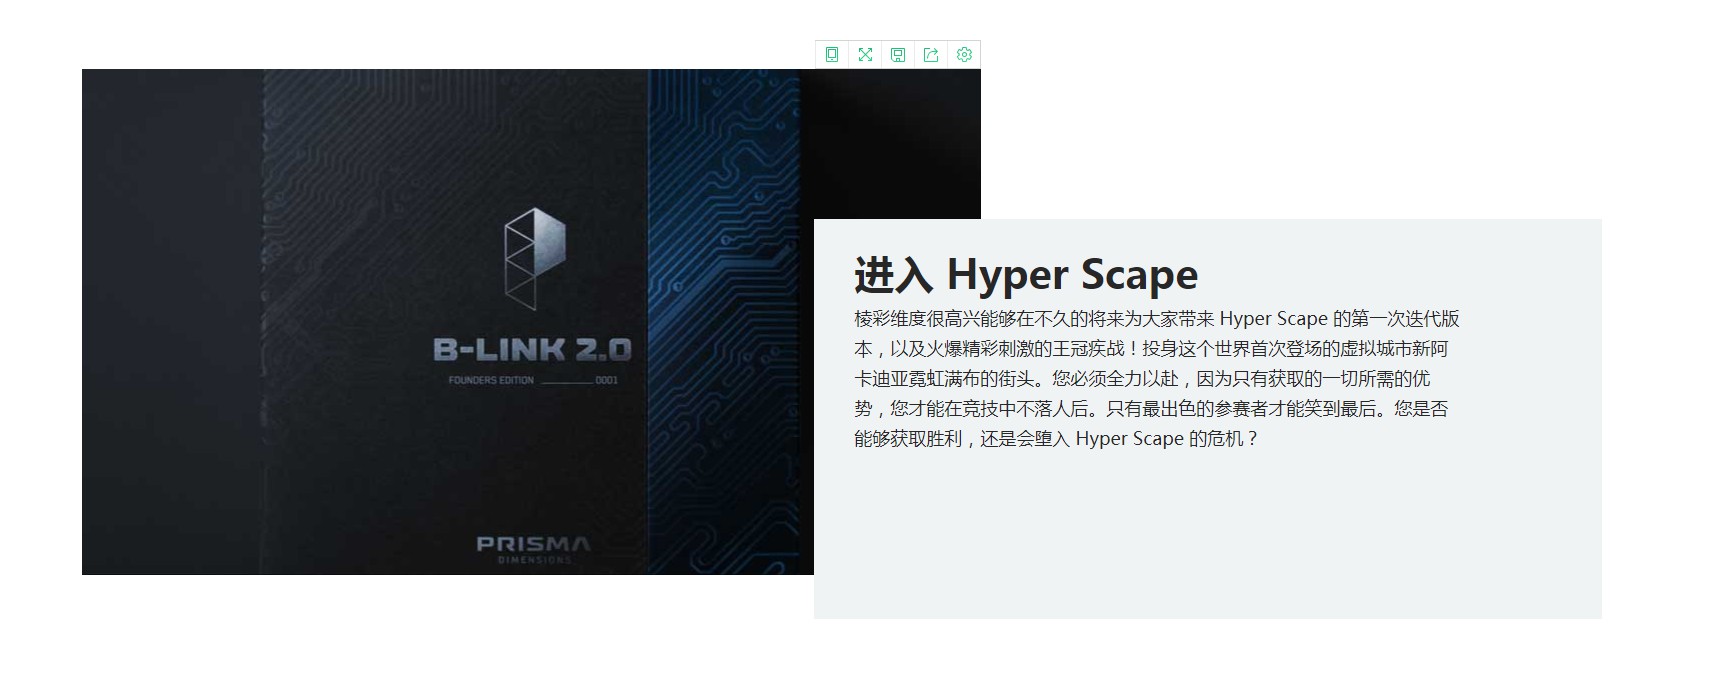 育碧新游《Hyper Scape》正式公布 官网已上线